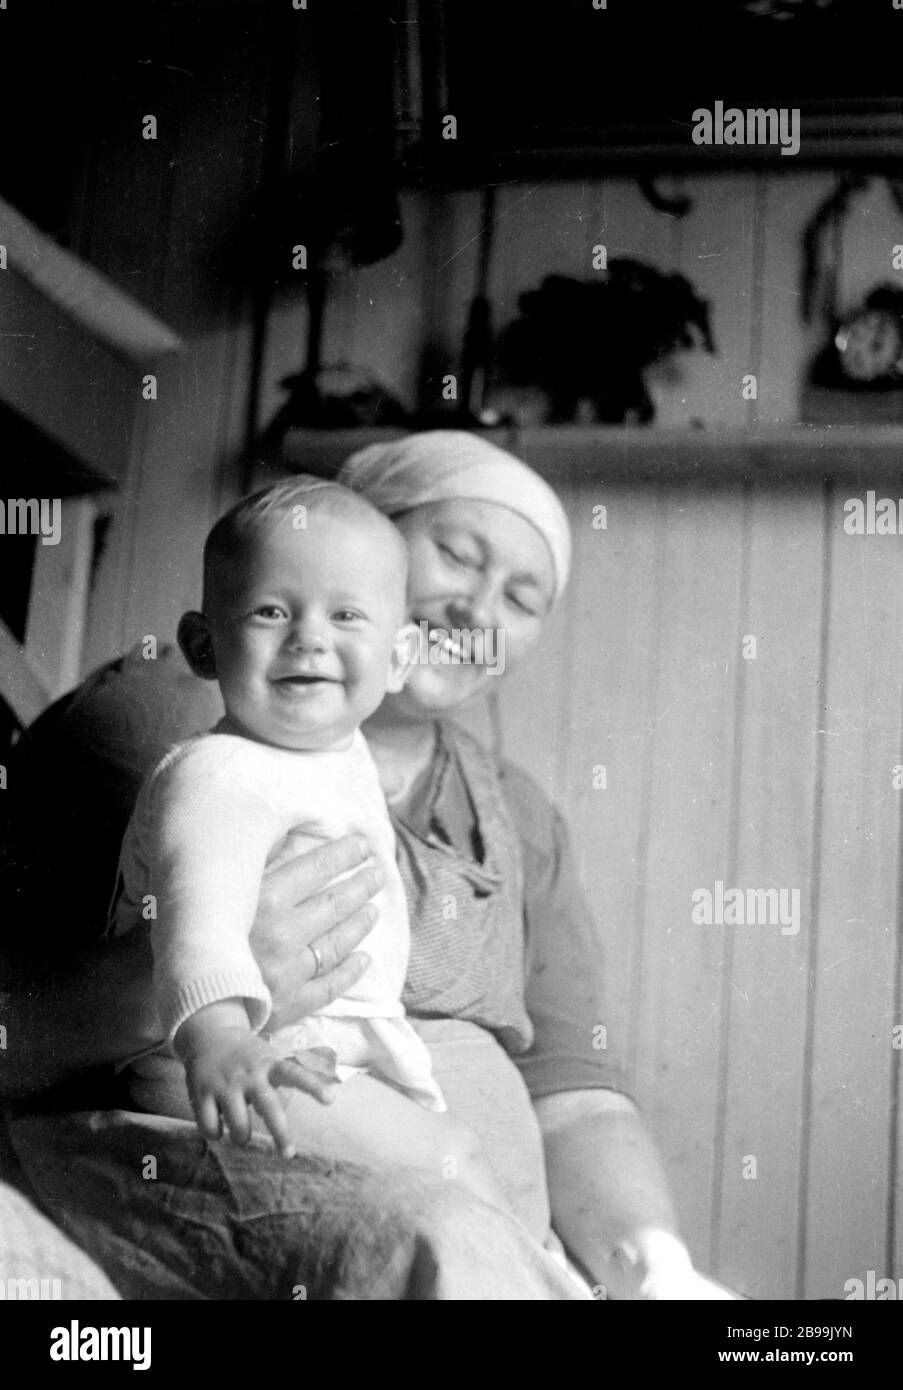 Il ragazzo rifugiato lettone di nove mesi siede in braccio alla madre (entrambi i modelli sono stati rilasciati) nel campo profughi tedesco dopo la seconda guerra mondiale. Foto Stock